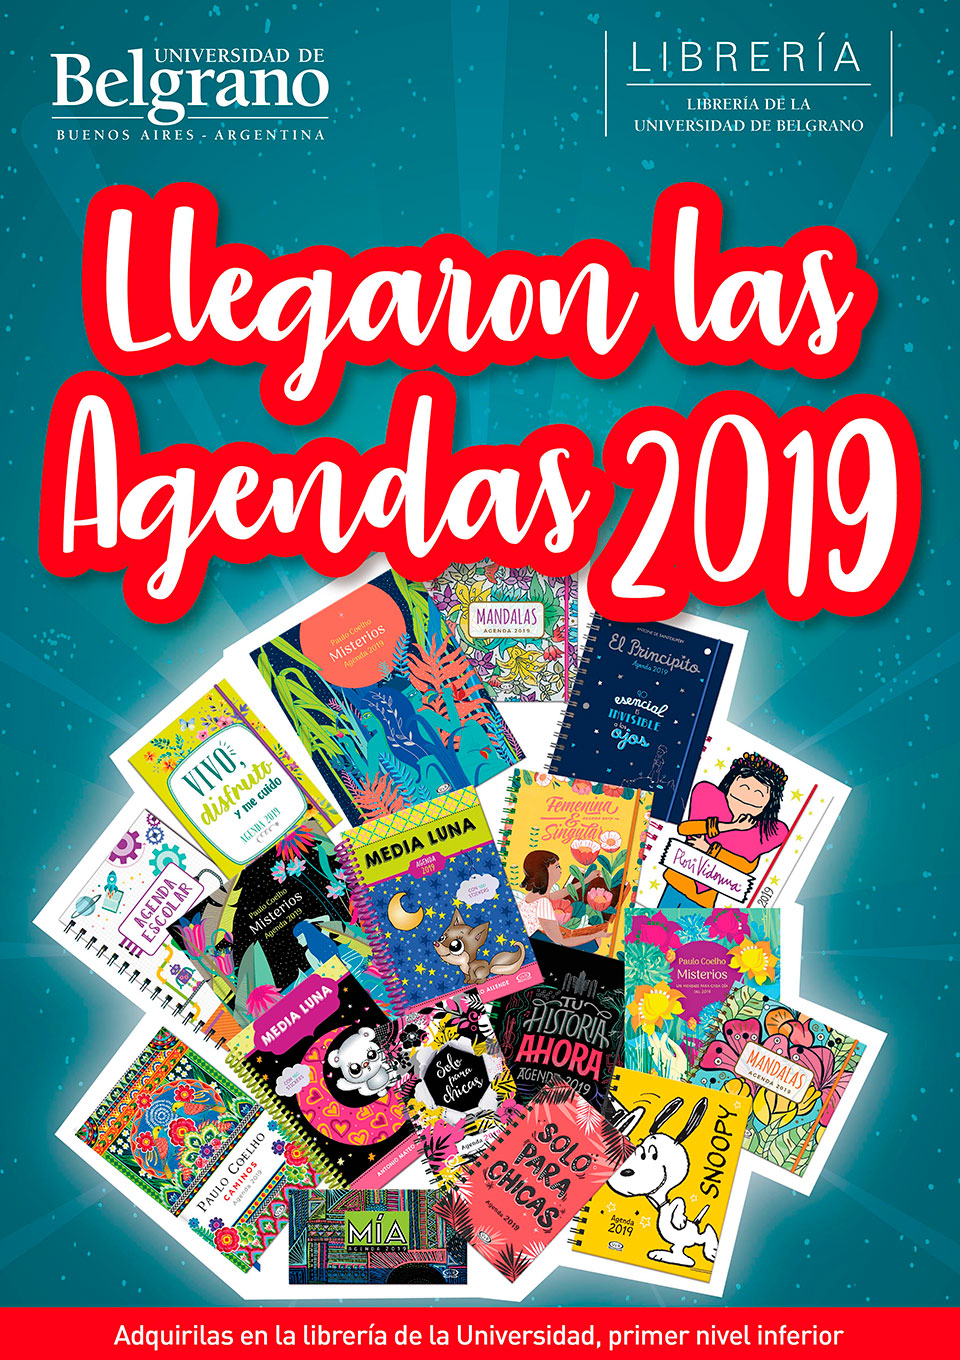 Universidad de Belgrano | Agendas 2019